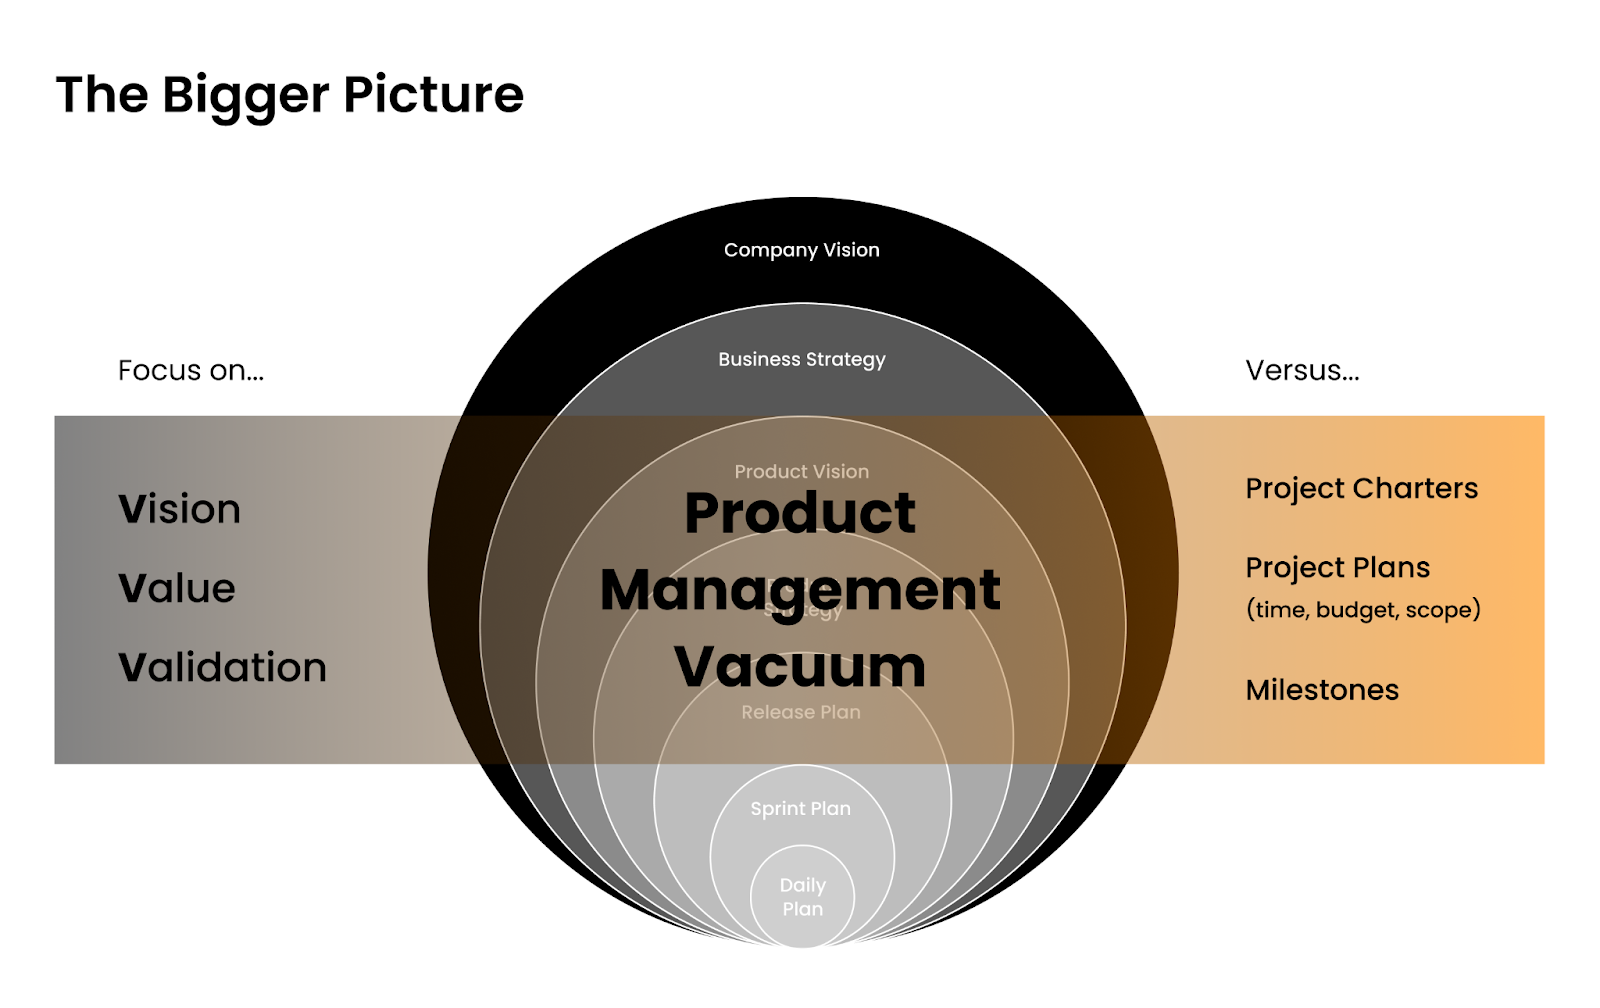 Product Management Vacuum